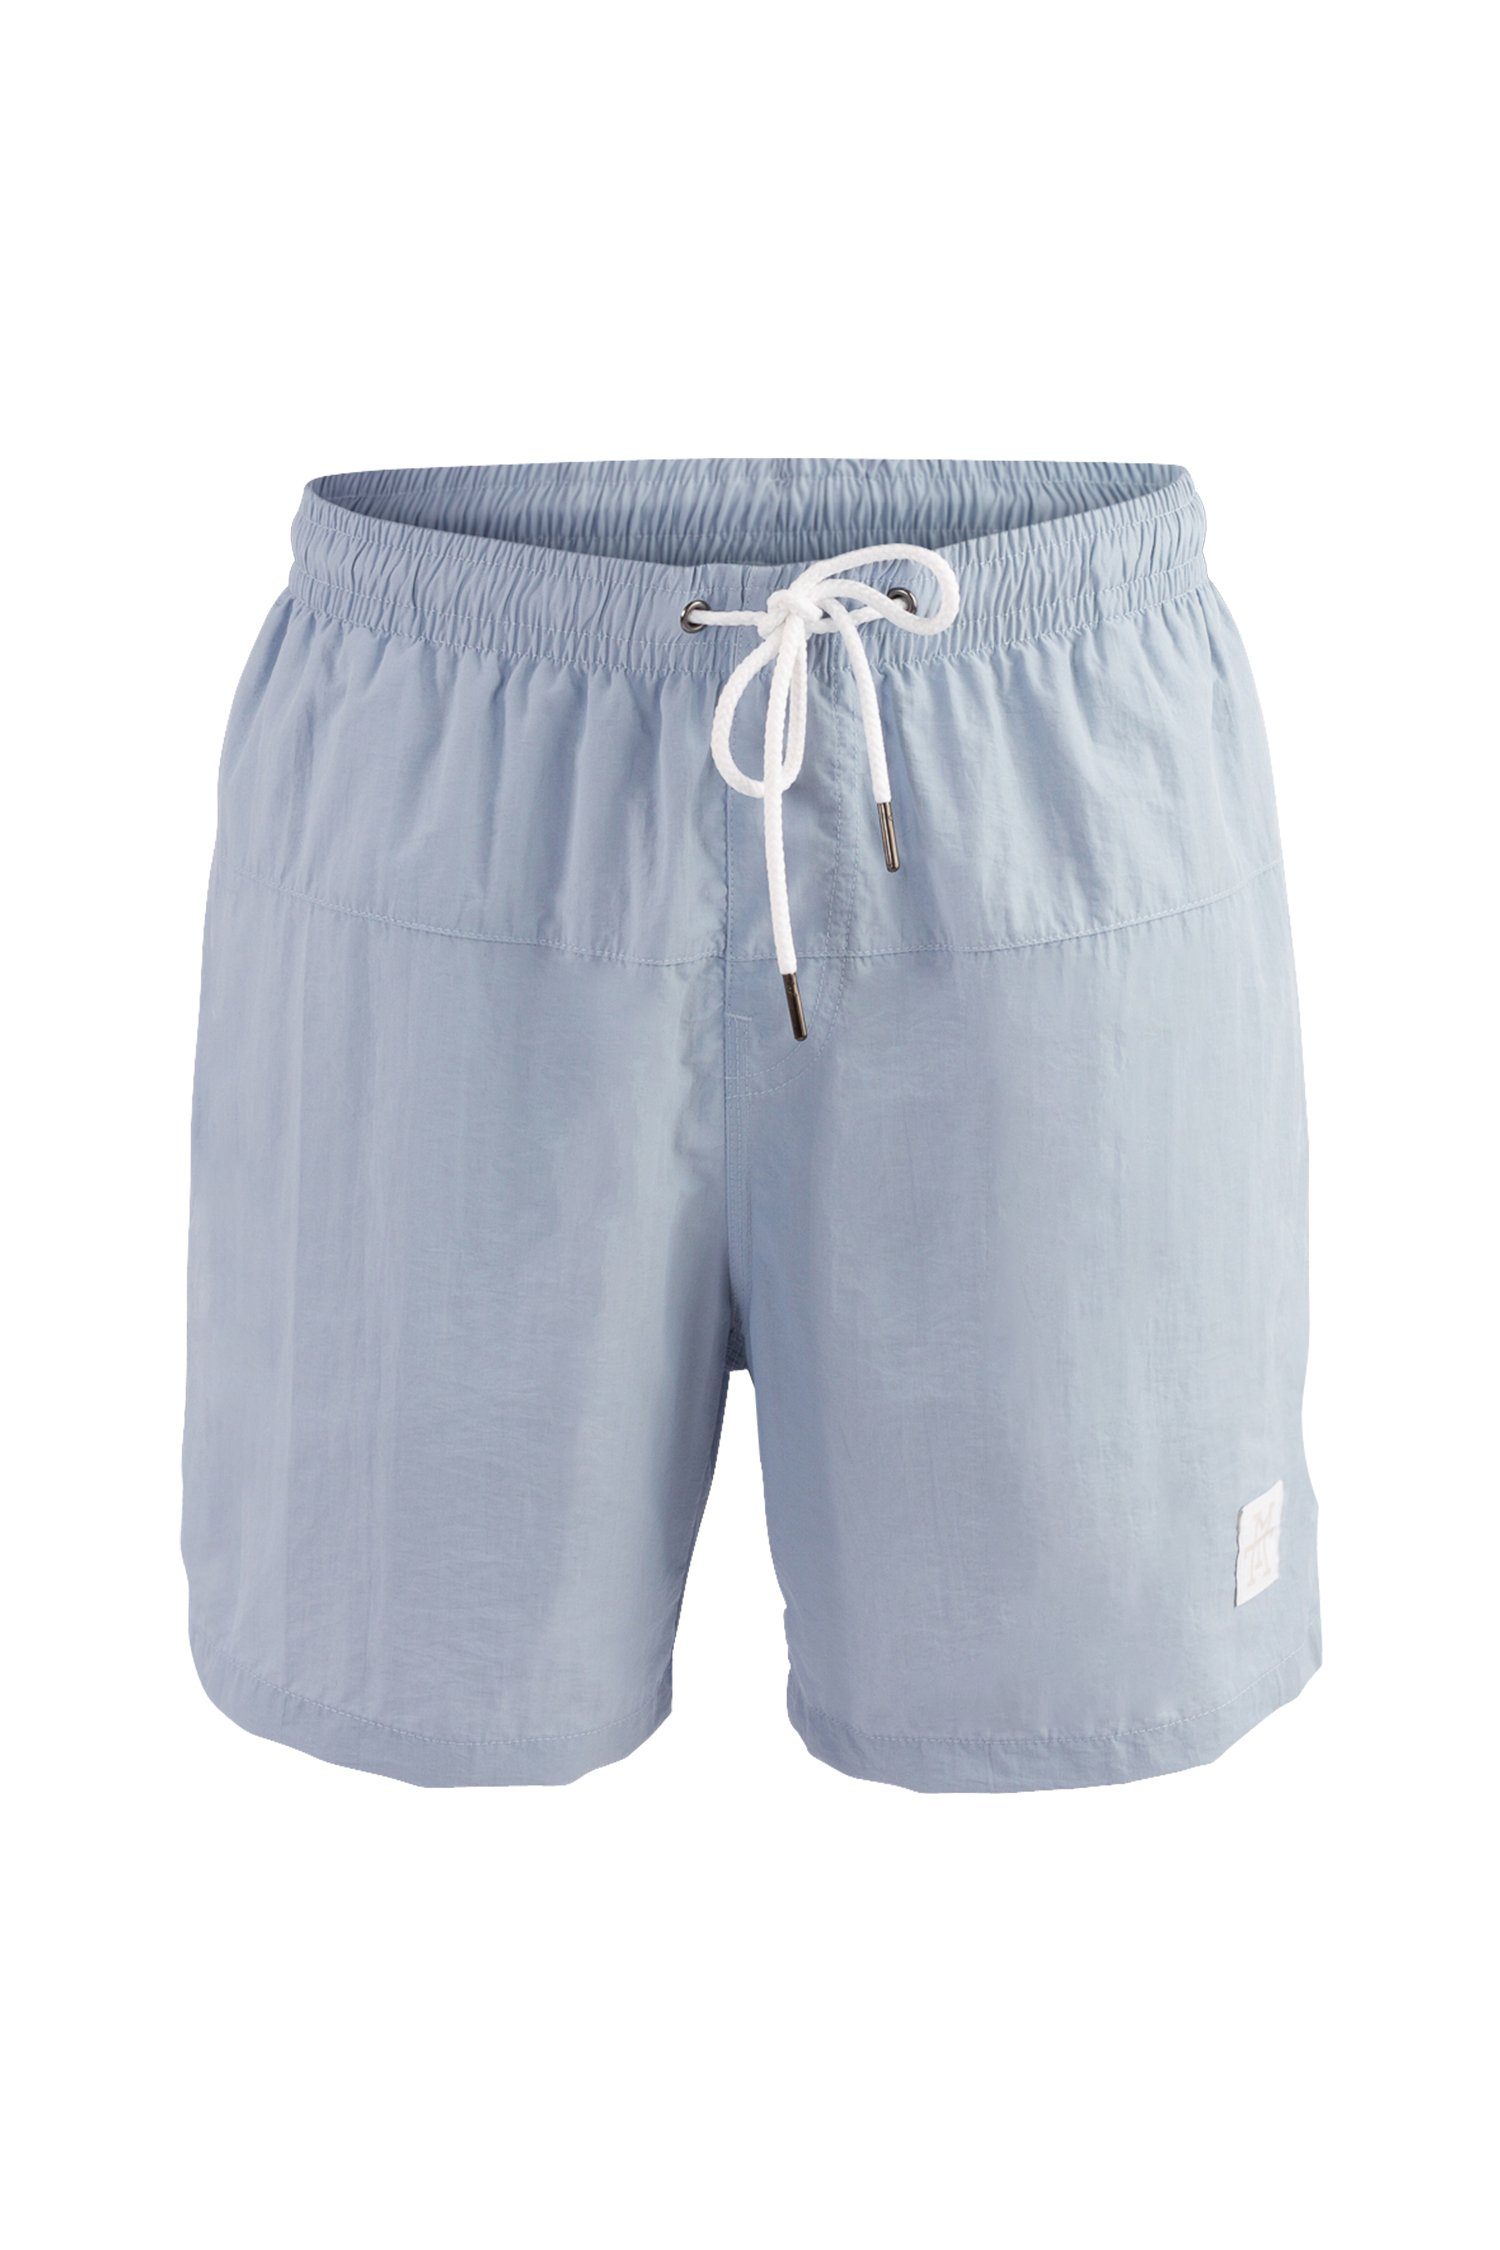 Schmuckgeschäft Manufaktur13 Badeshorts Swim Shorts - Sky Blue Badehosen schnelltrocknend